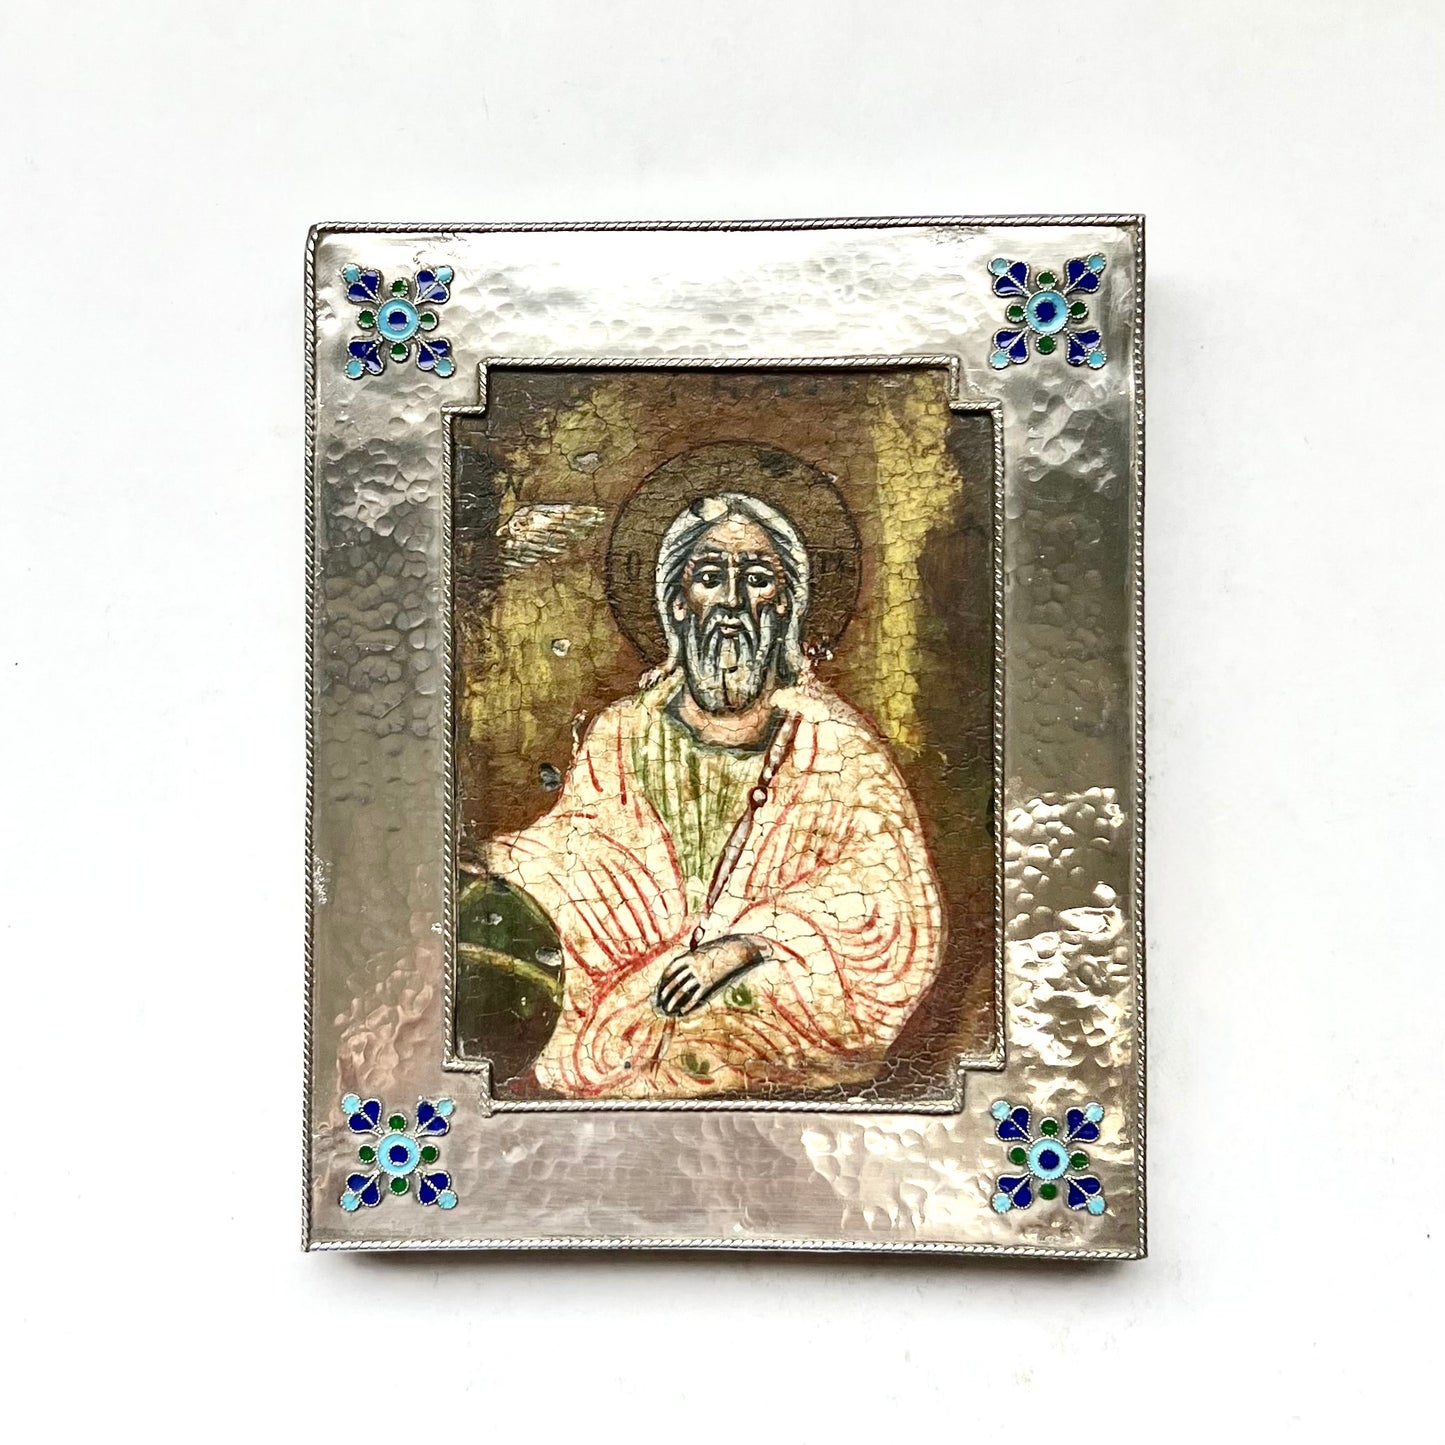 20 世纪早期欧洲精美绘制的东正教圣人圣像，带有手工锤制的 950 银边框